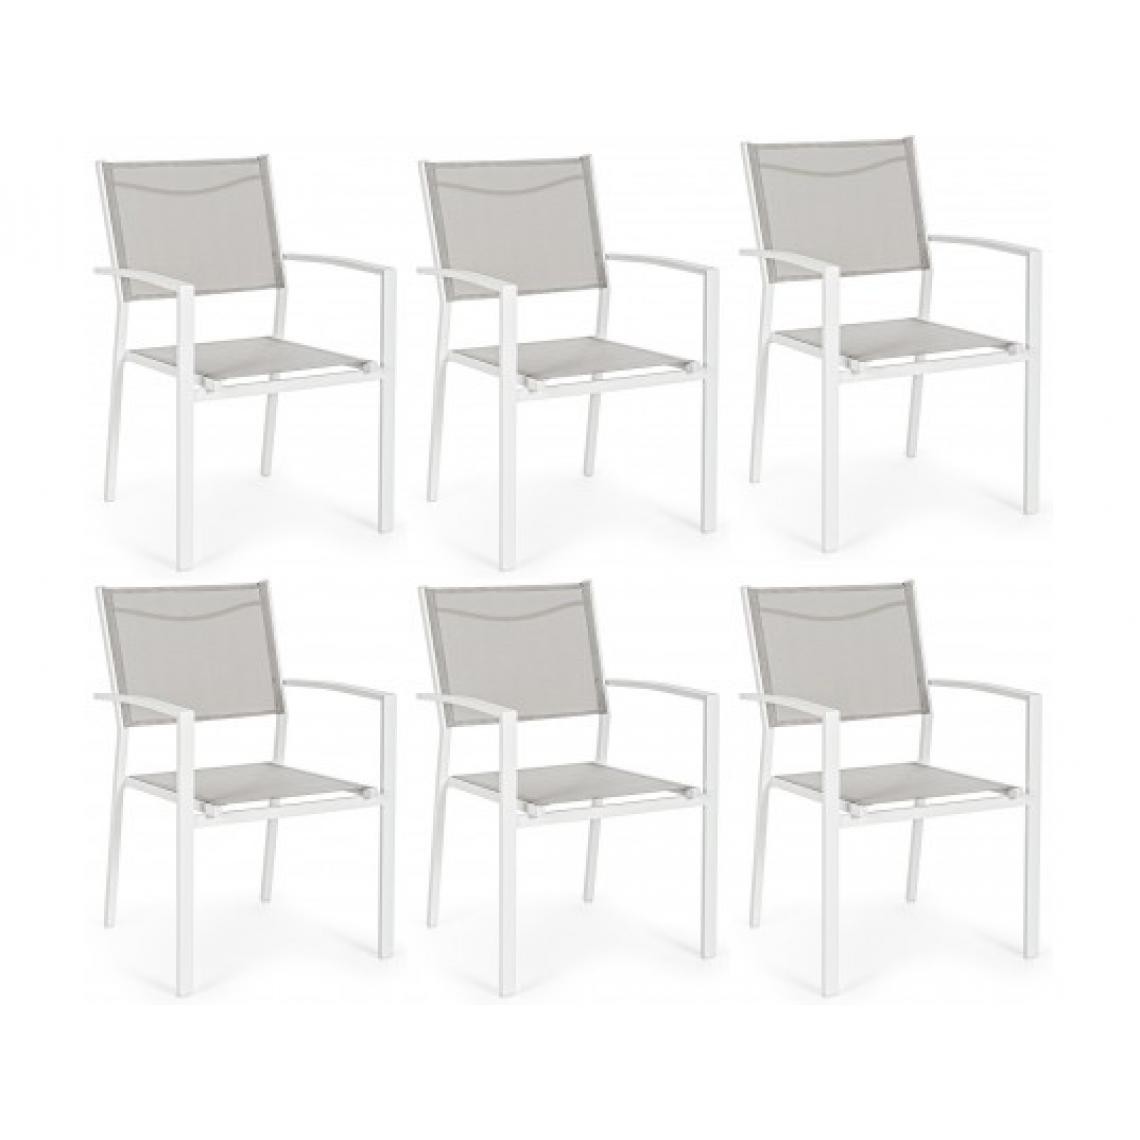 Bizzotto - Fauteuil Lot de 6 fauteuil Hilde blanc - Fauteuil de jardin